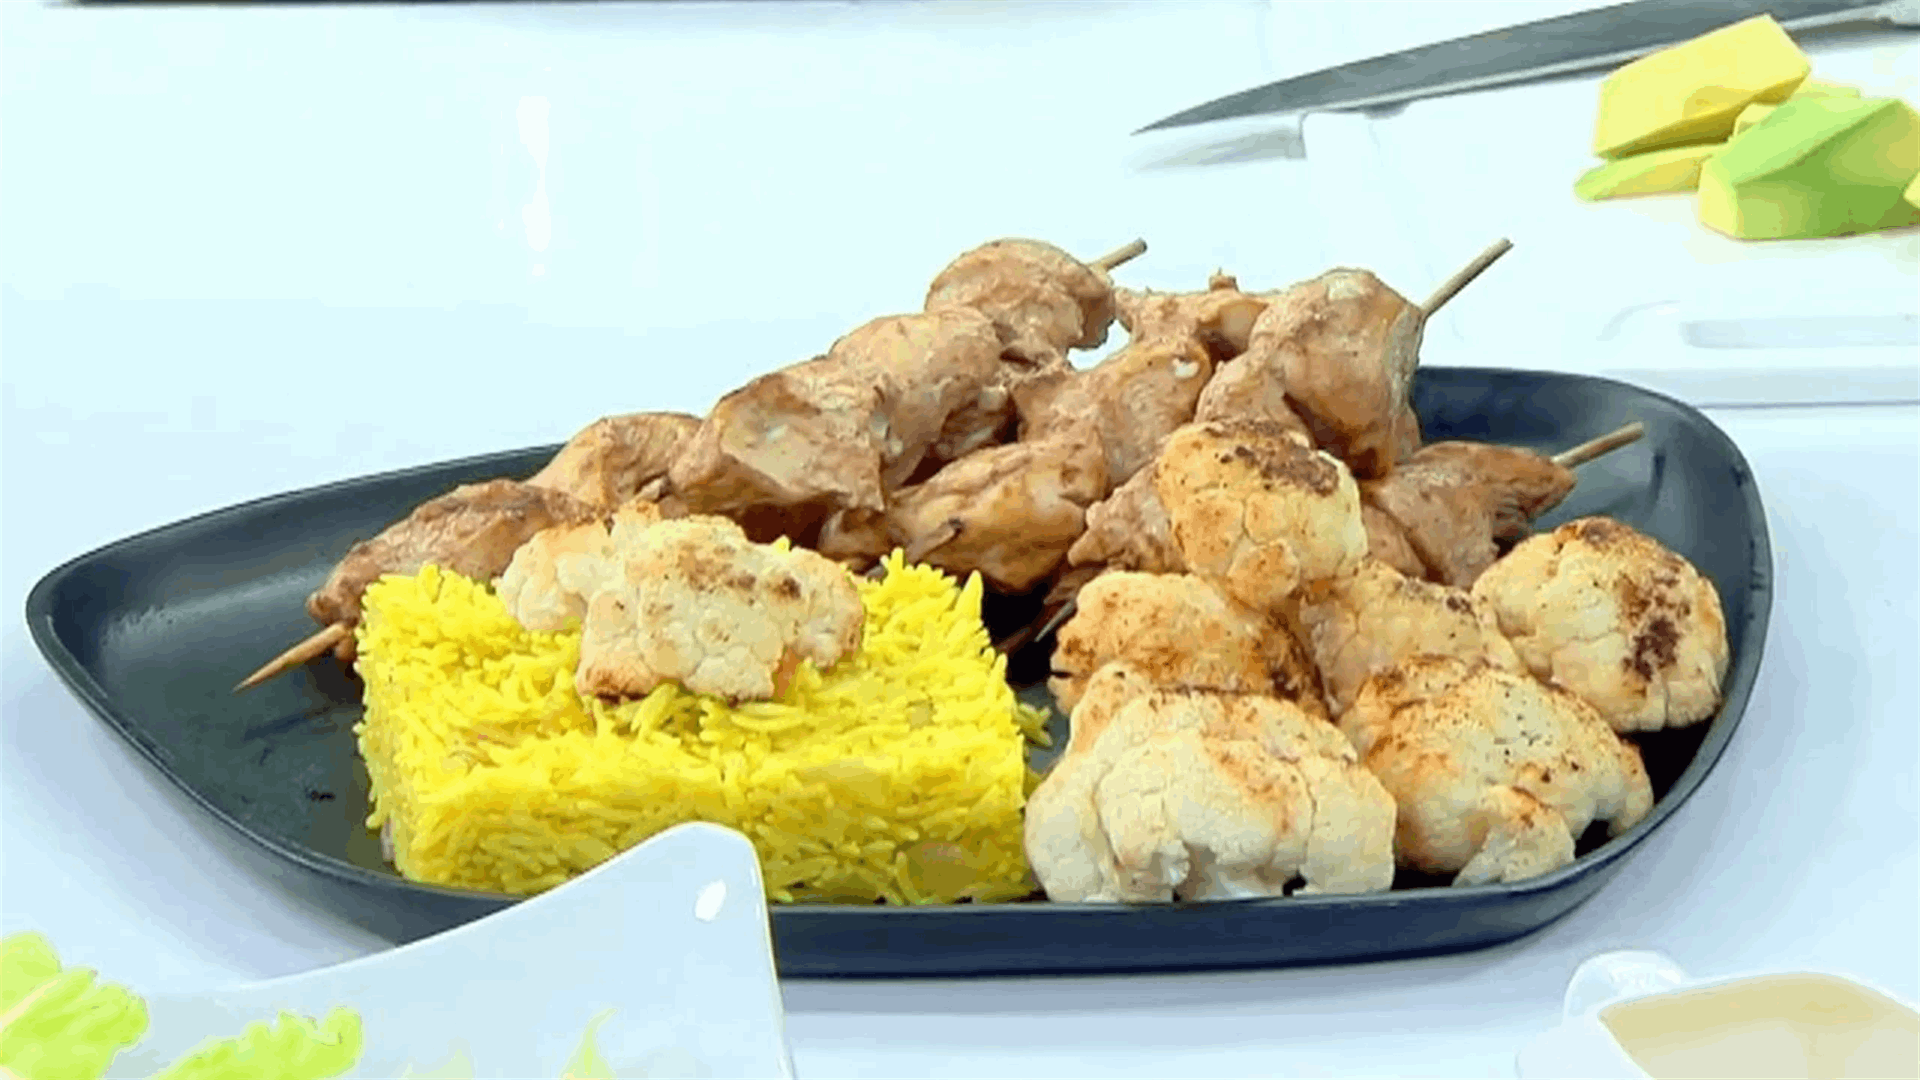 طبق لذيذ وسهل التحضير...تعلموا وصفة الدجاج مع الأرز والقرنبيط (فيديو)